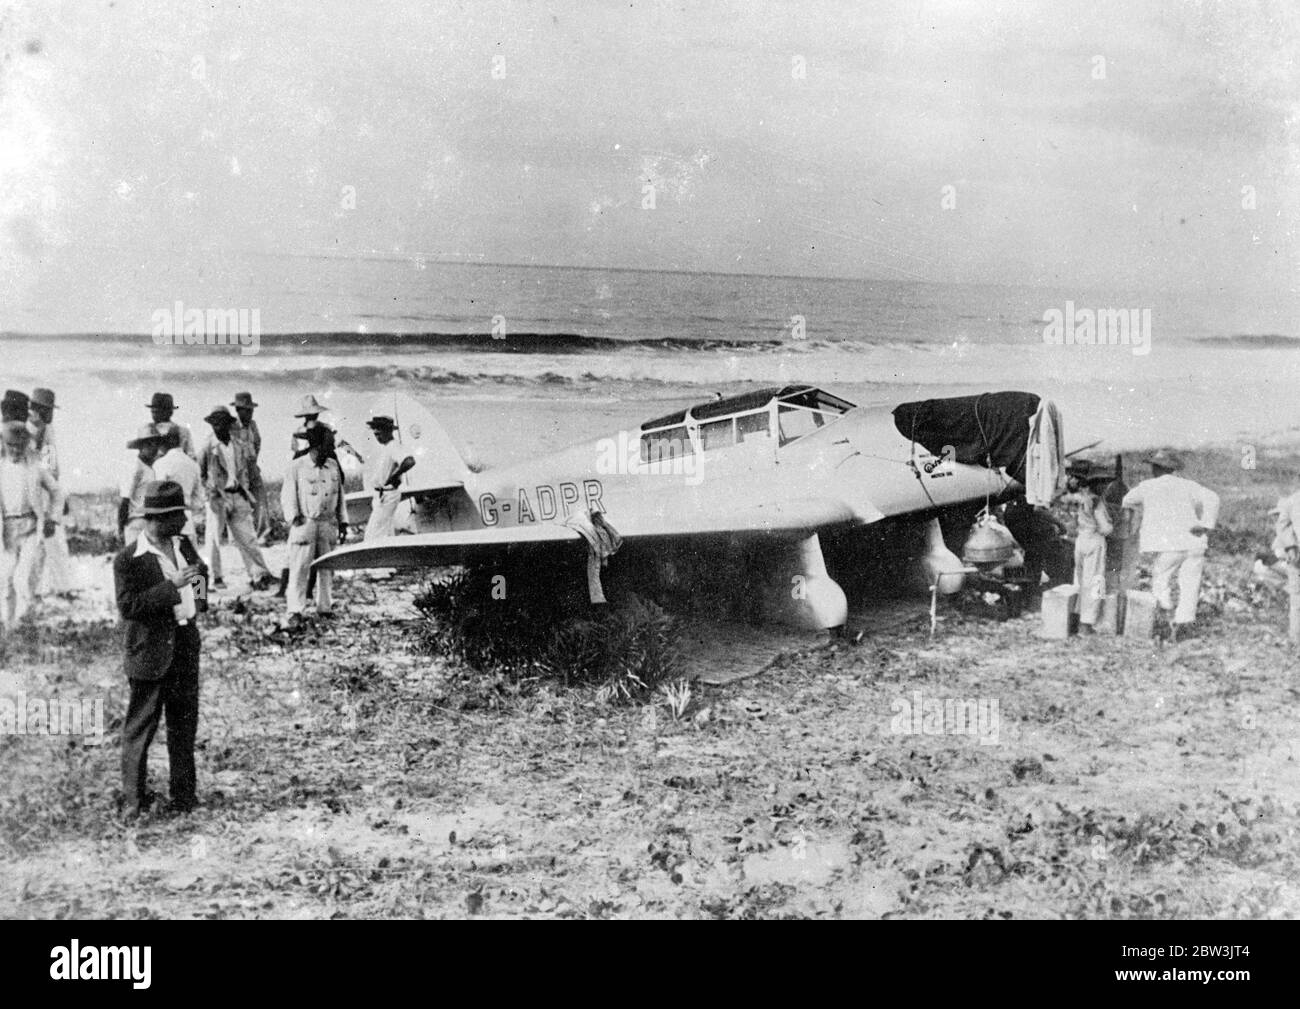 Wo Jean Batten wurde nach Rekord Atlantic Crossing gezwungen. Miss Jean Batten 's Flugzeug von einer Menge am Strand von Araruama umgeben. Dezember 1935 Stockfoto